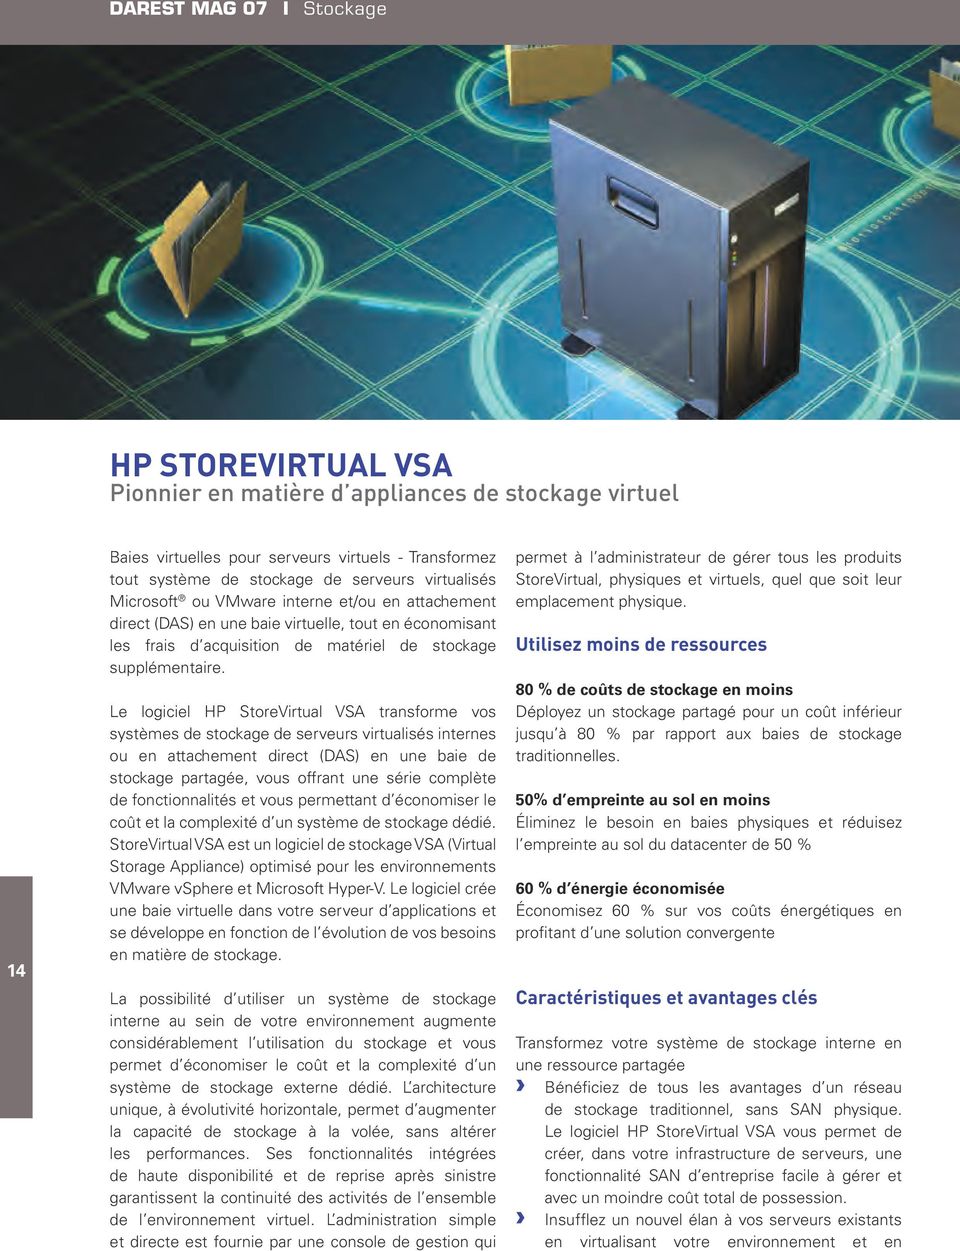 Le logiciel HP StoreVirtual VSA transforme vos systèmes de stockage de serveurs virtualisés internes ou en attachement direct (DAS) en une baie de stockage partagée, vous offrant une série complète